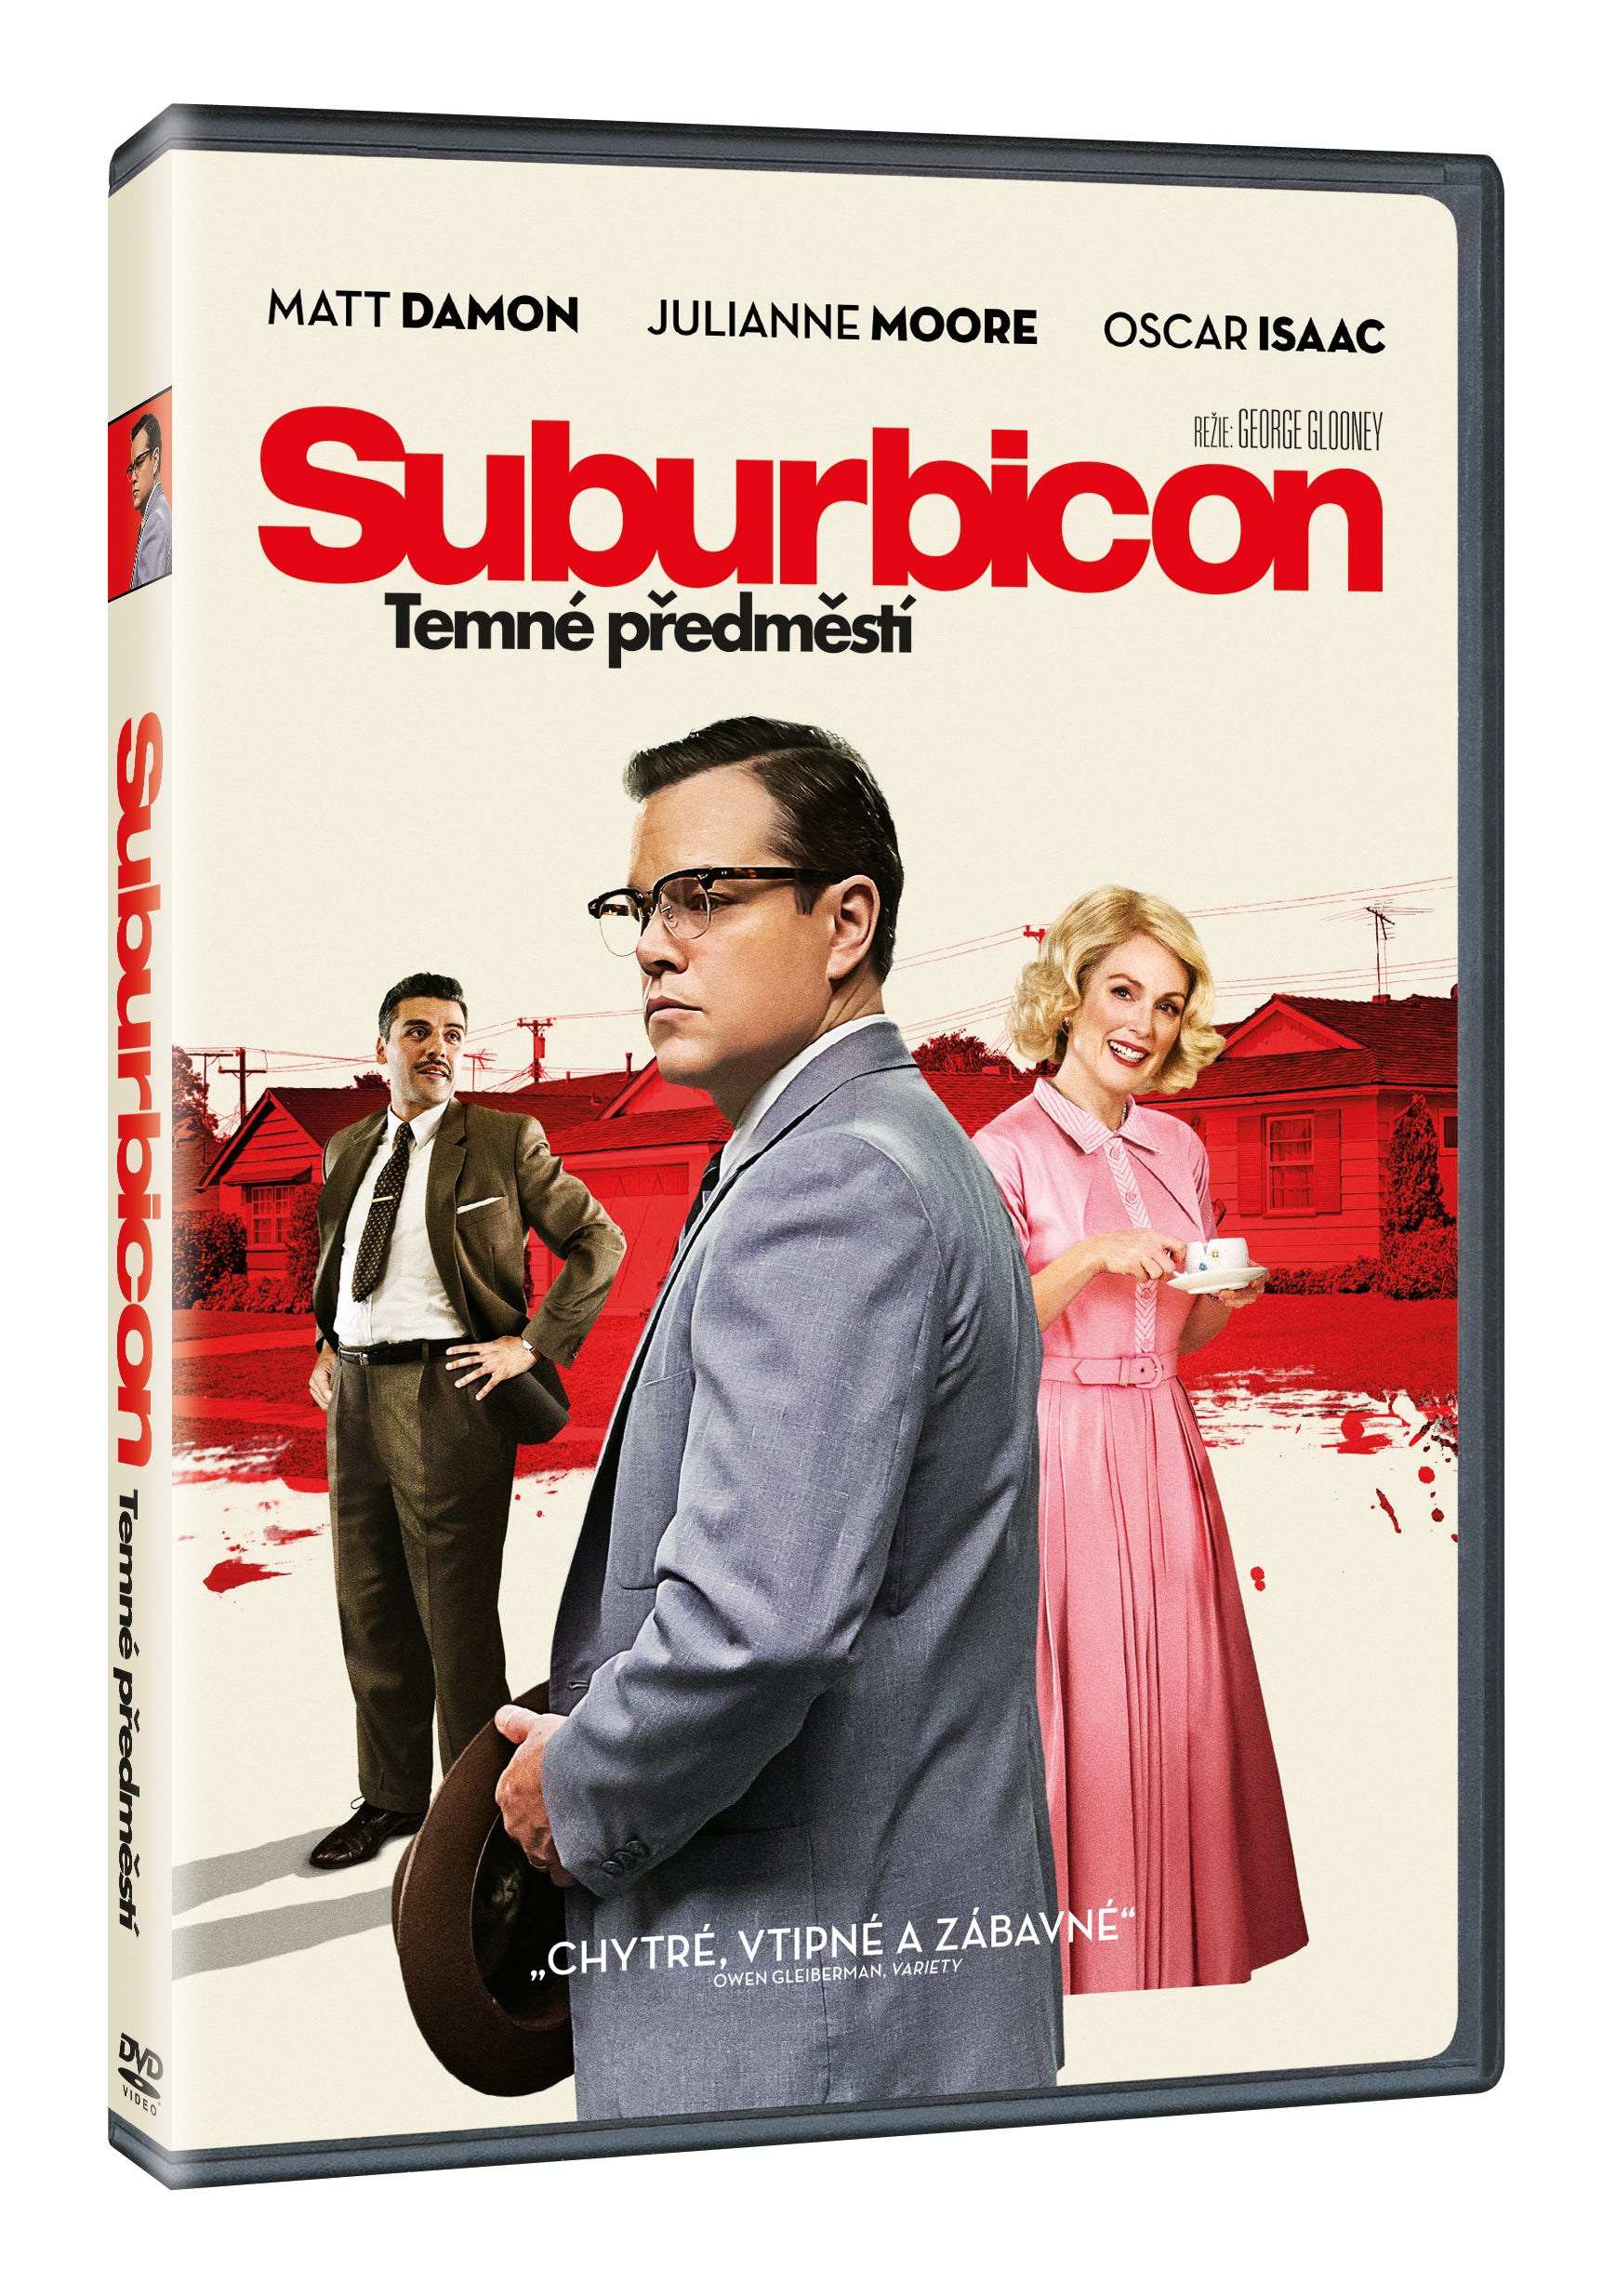 Suburbicon: Temne predmesti DVD / Suburbicon